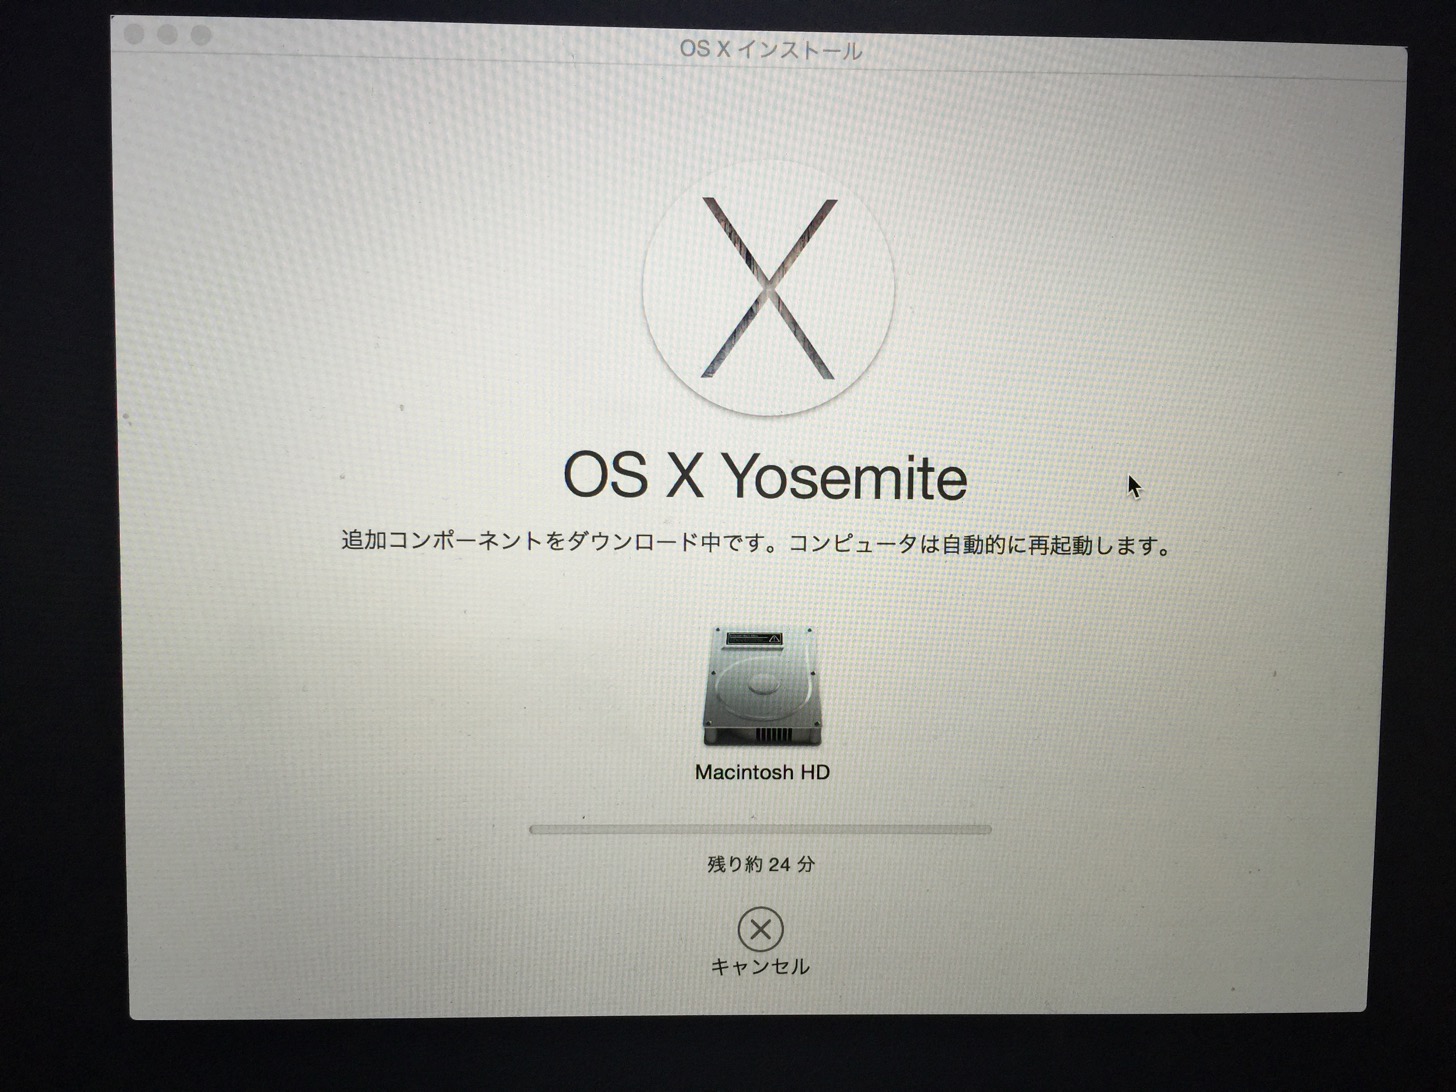 OS X Yosemiteダウンロード中。